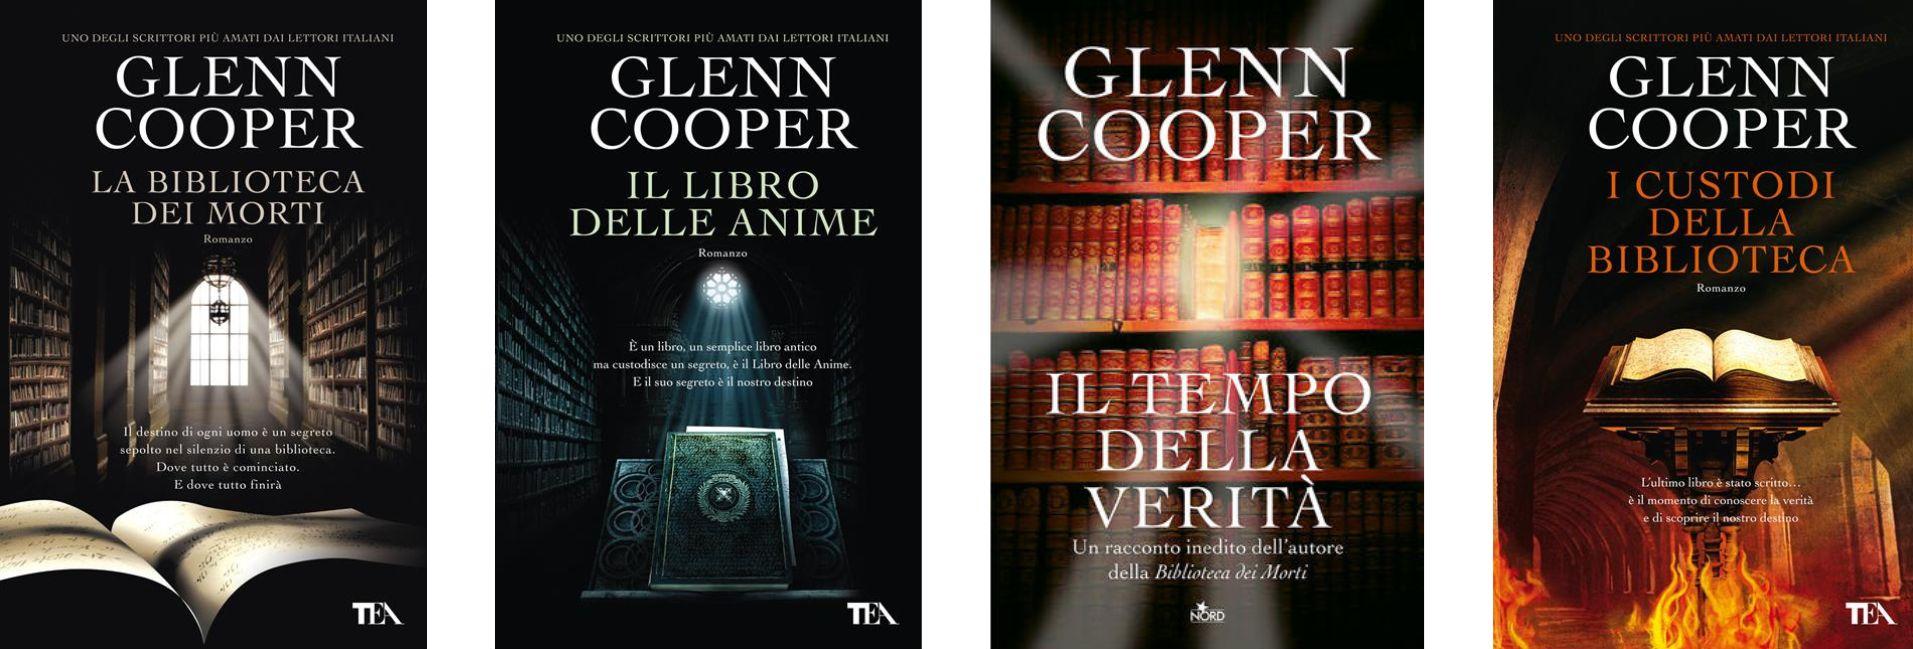 La biblioteca dei morti di Glenn Cooper - Libri usati su